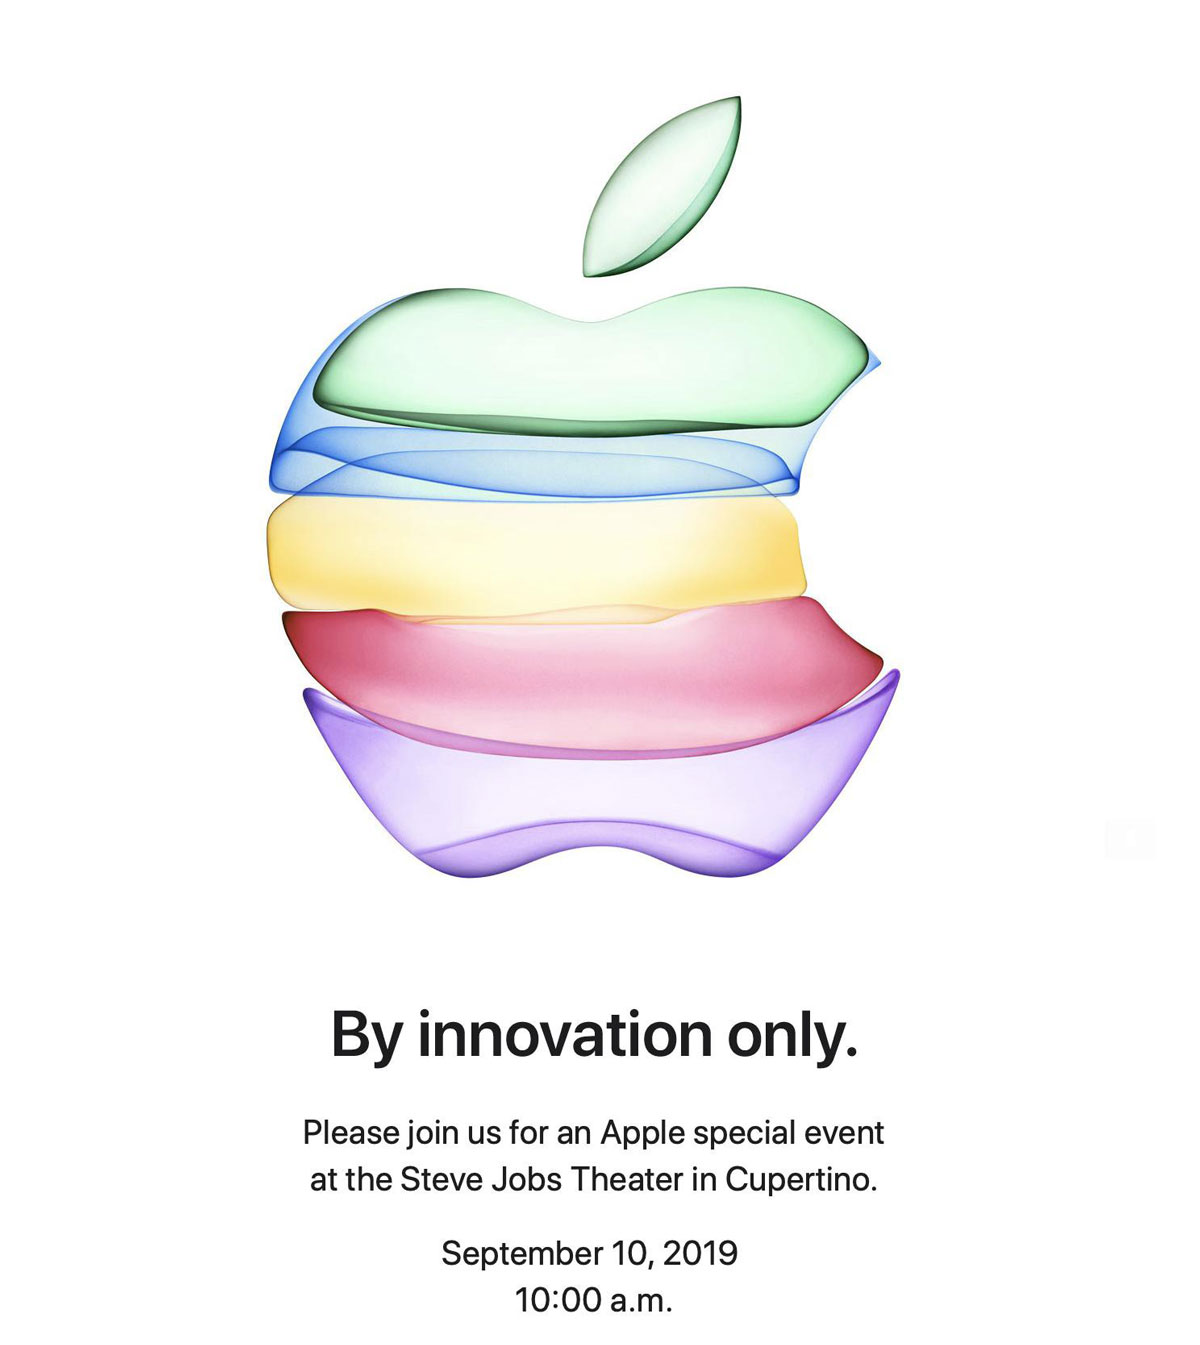 Apple chính thức công
bố ngày ra mắt iPhone 11 - 0h ngày 11/9 giờ Việt Nam